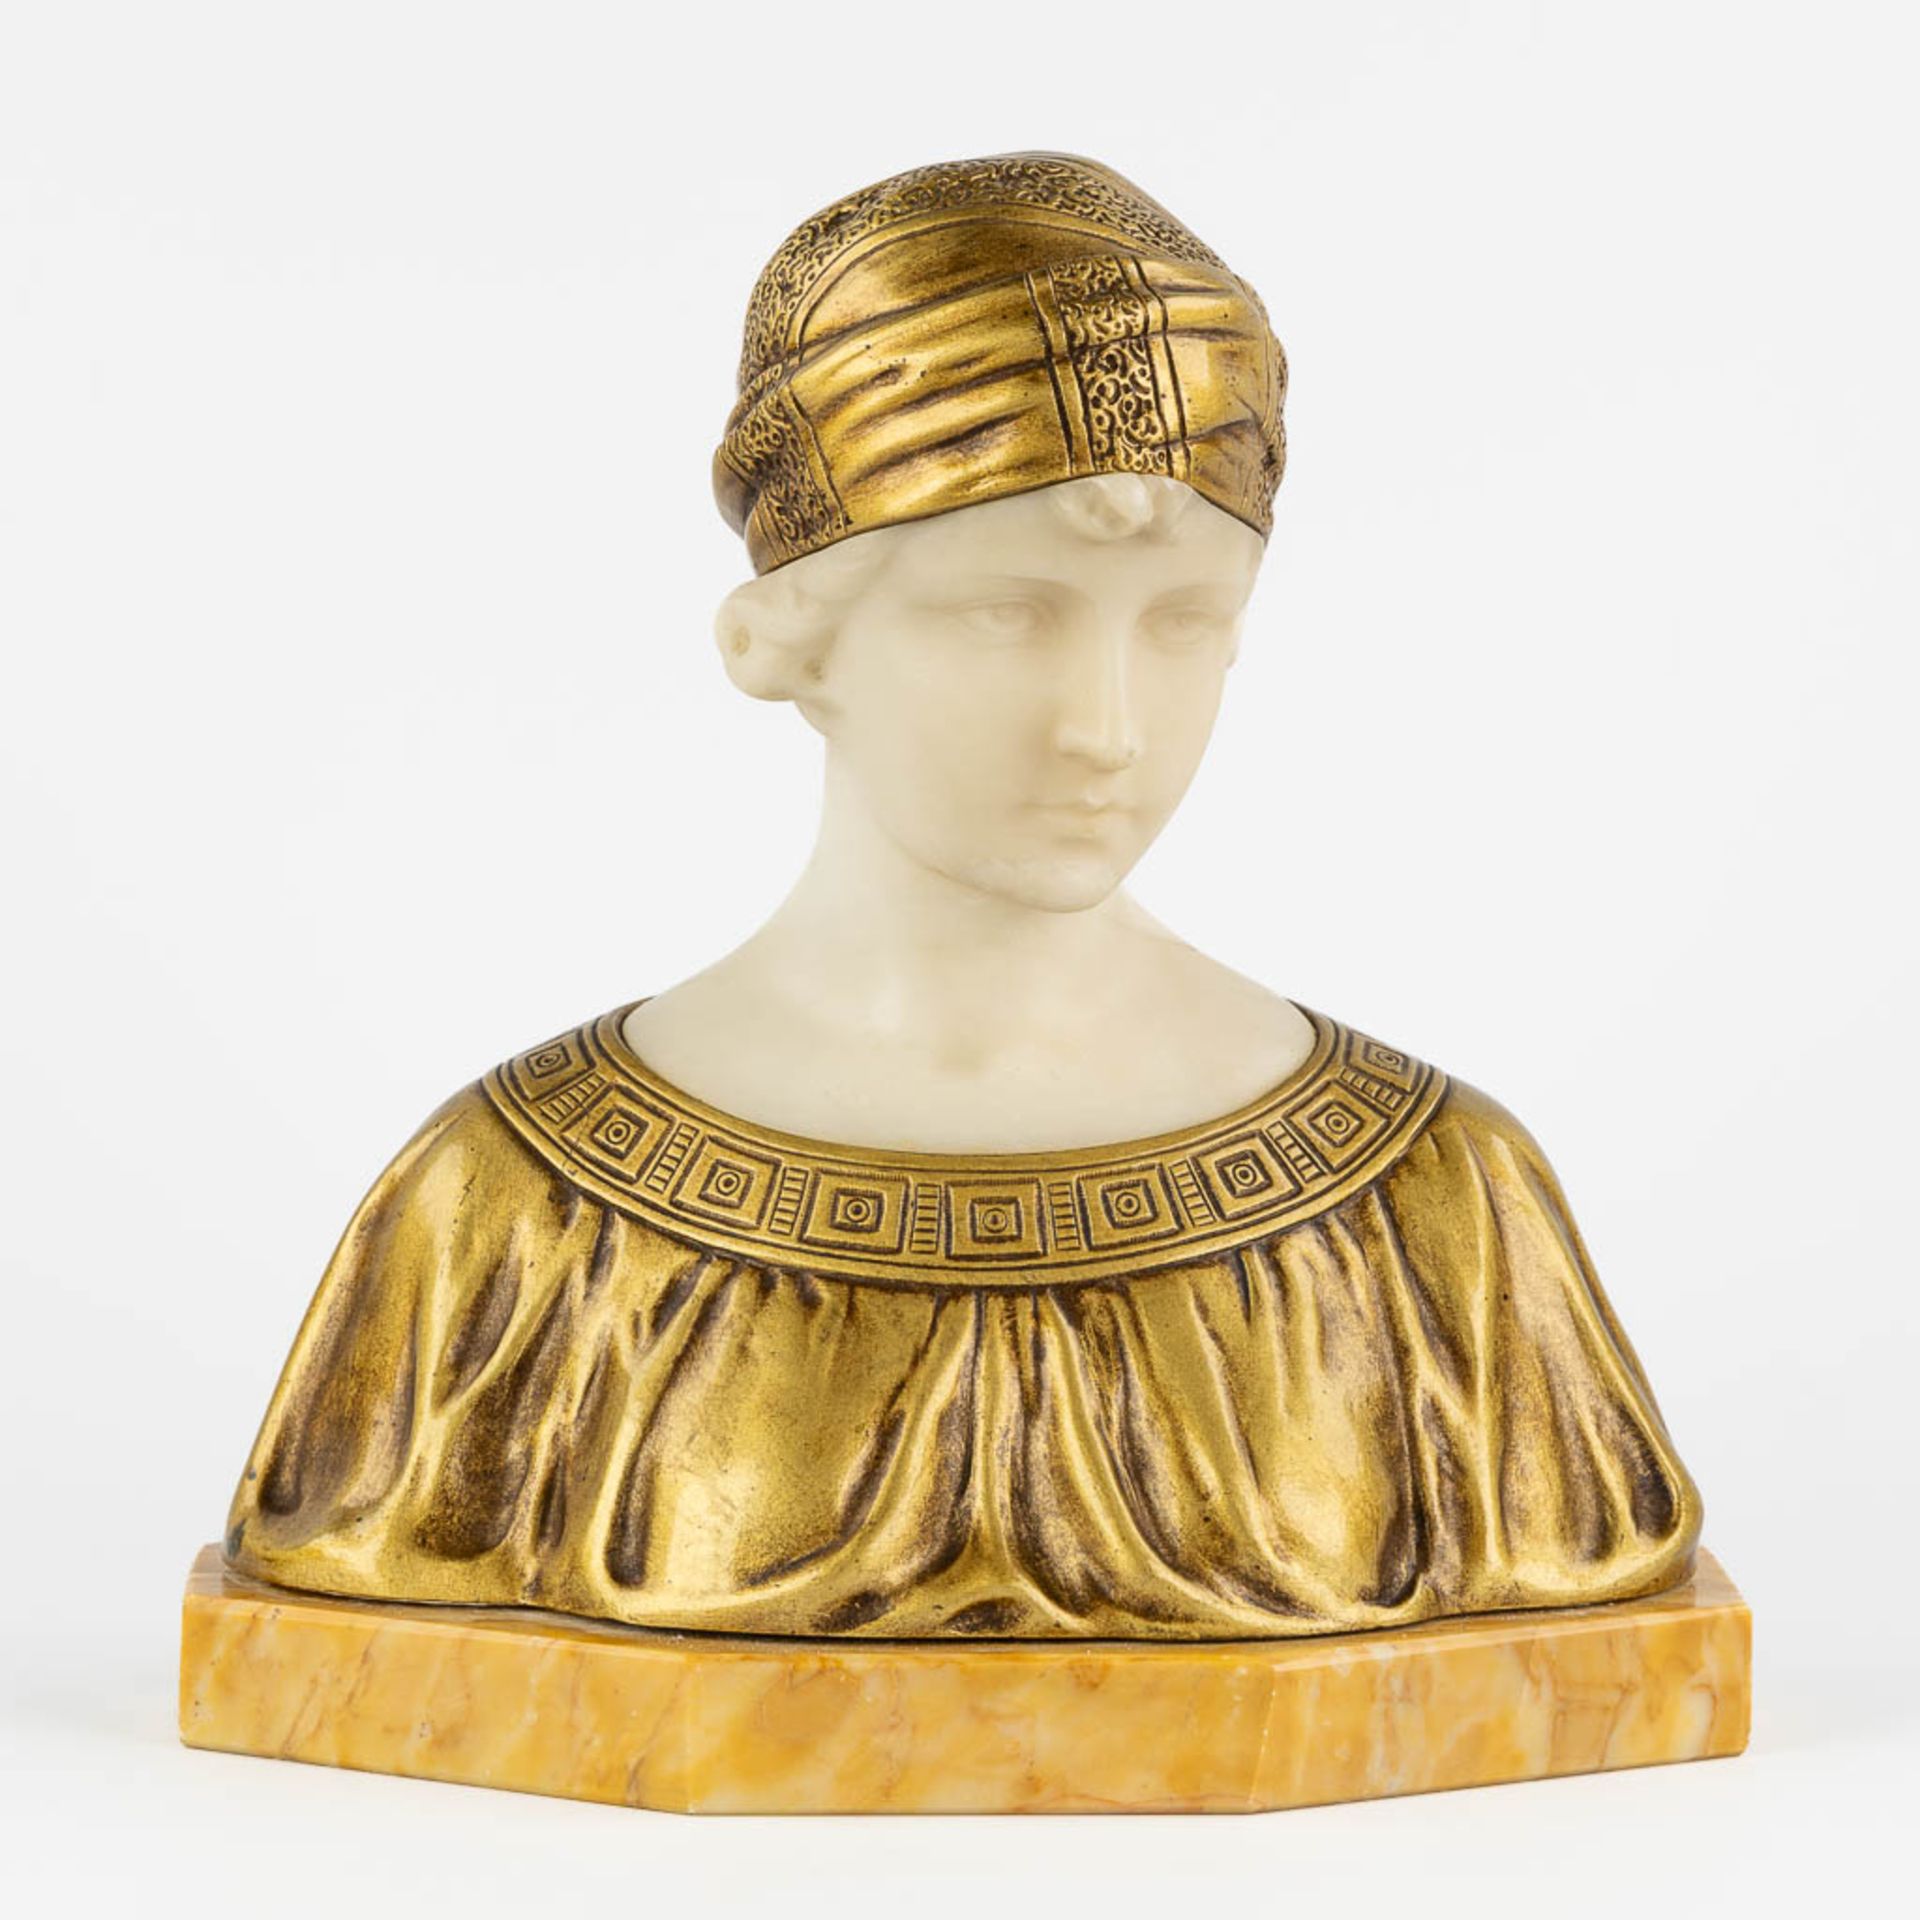 Pierre BALESTRA (XIX-XX) 'Figurine of a lady' gilt bronze and alabaster. (L:16 x W:31 x H:32 cm)